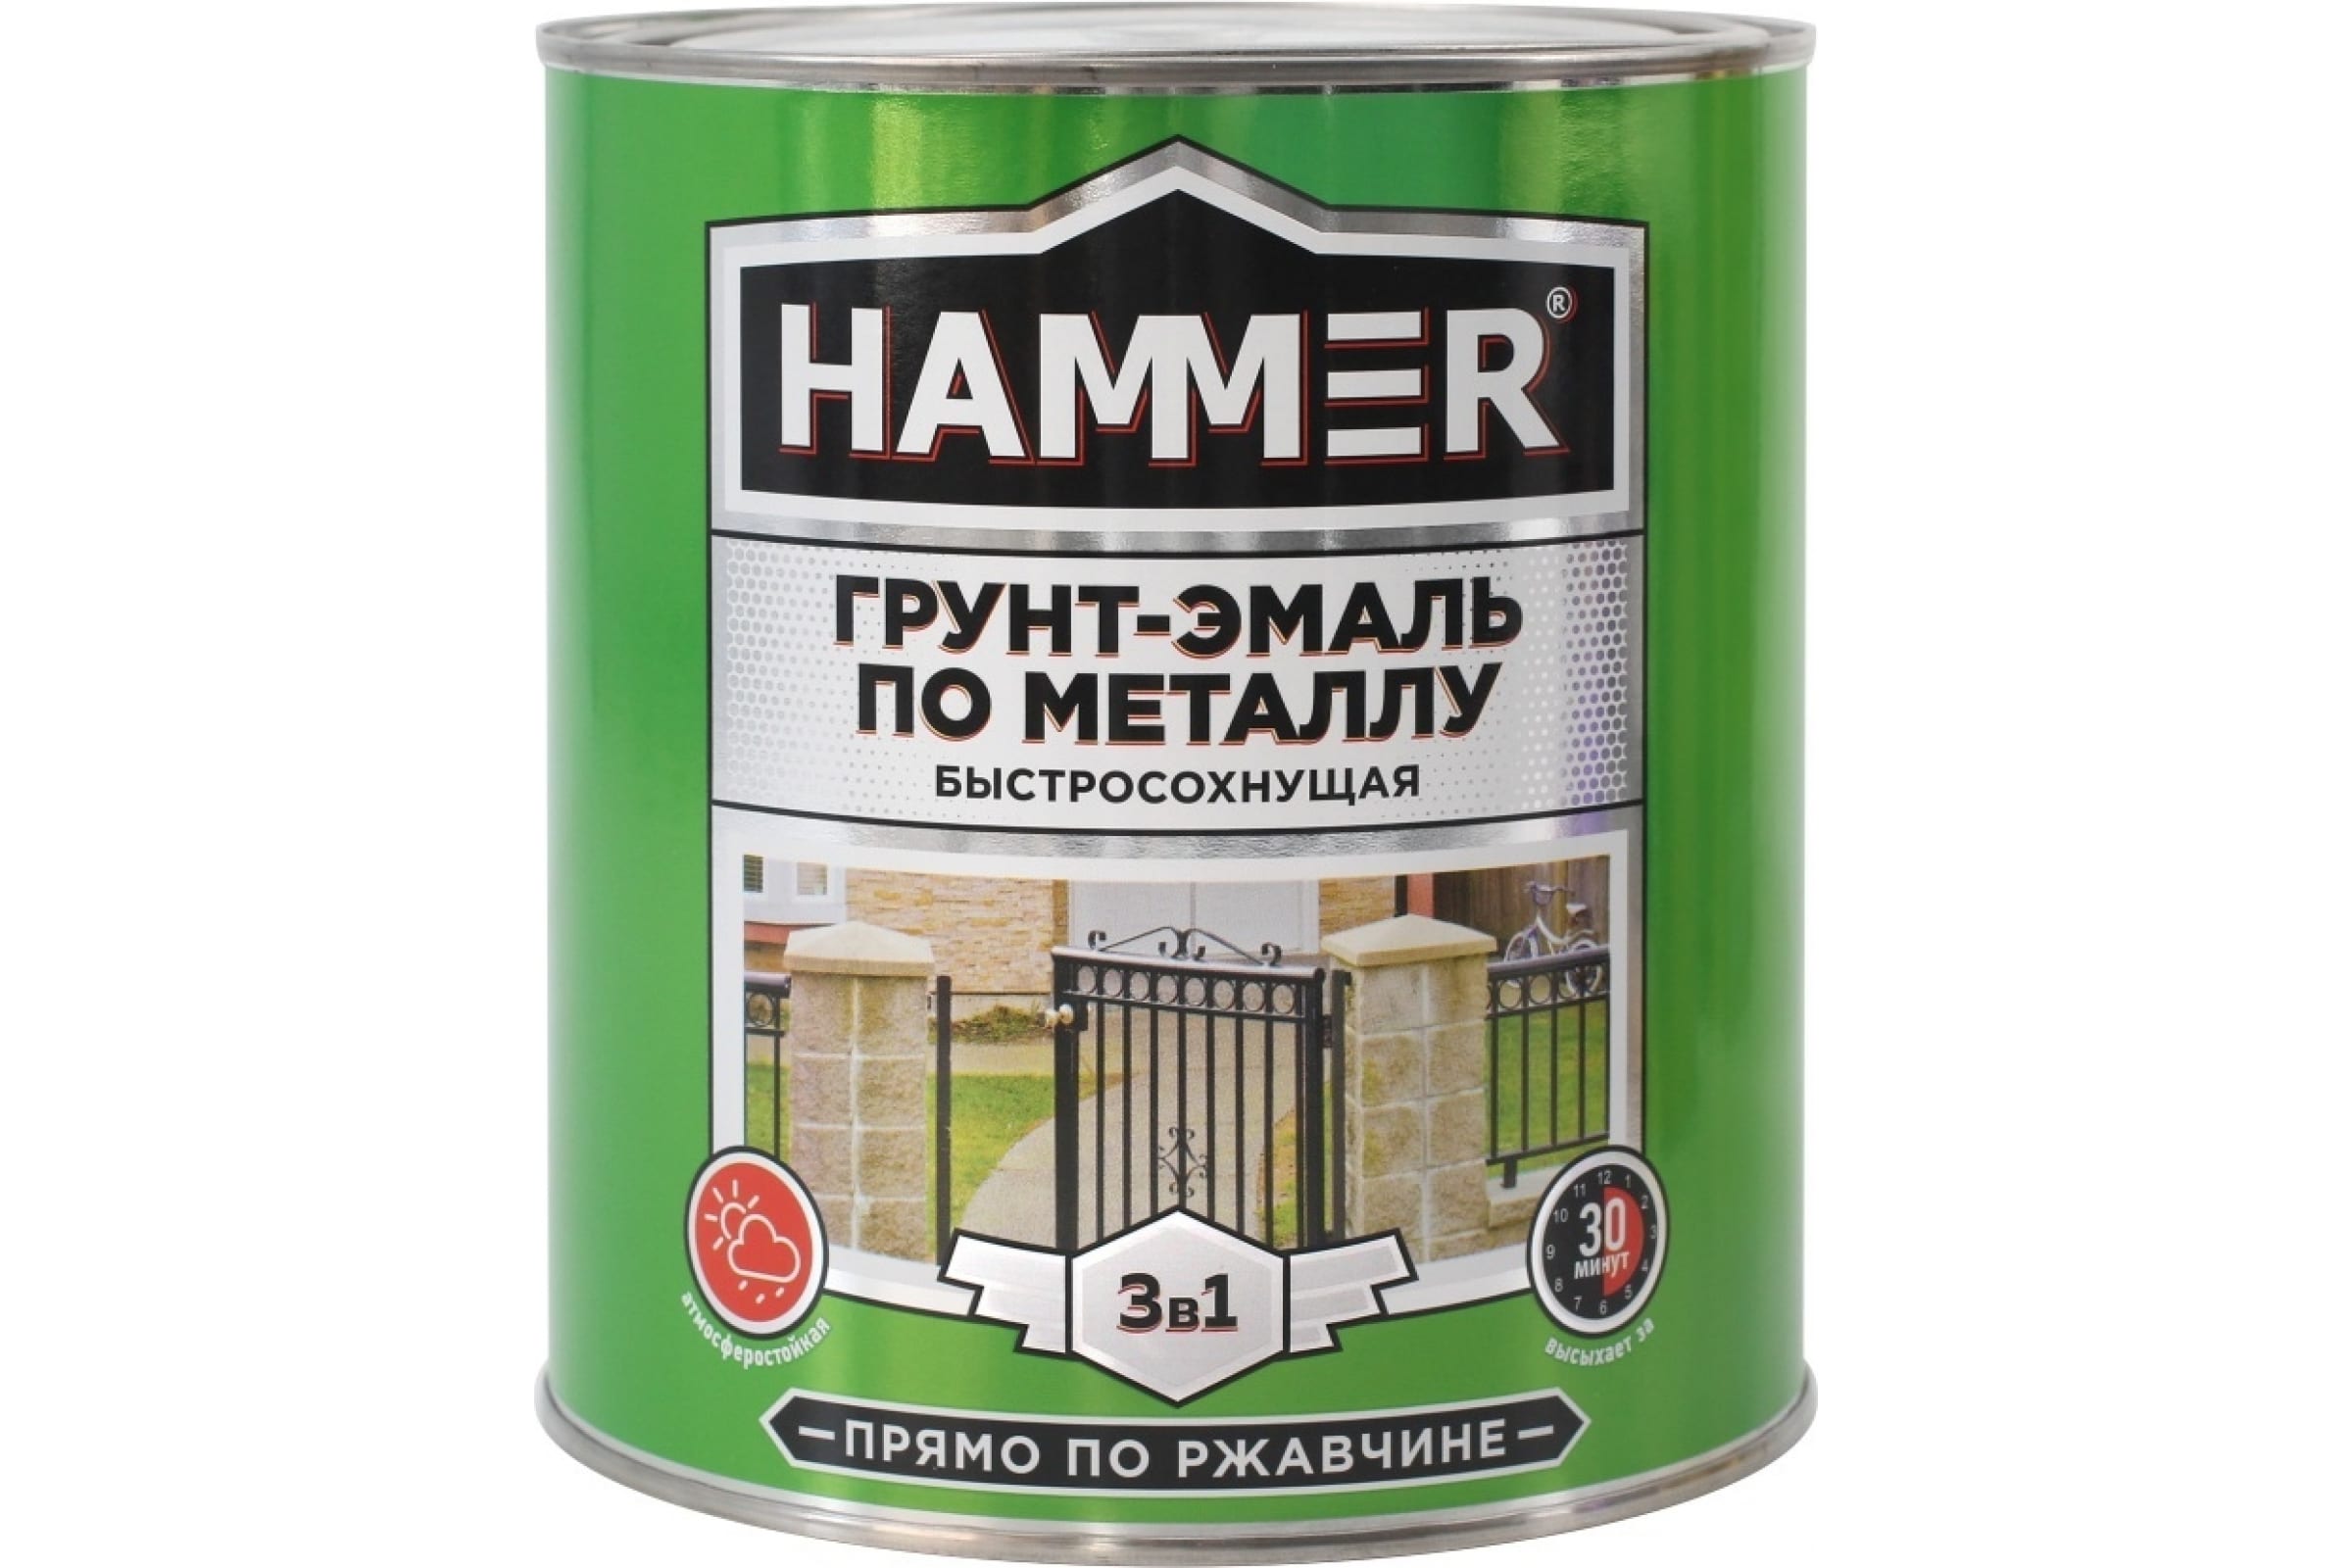 фото Hammer грунт-эмаль по металлу 3 в 1 б/с серая 2,7 кг / 4 эк000125866